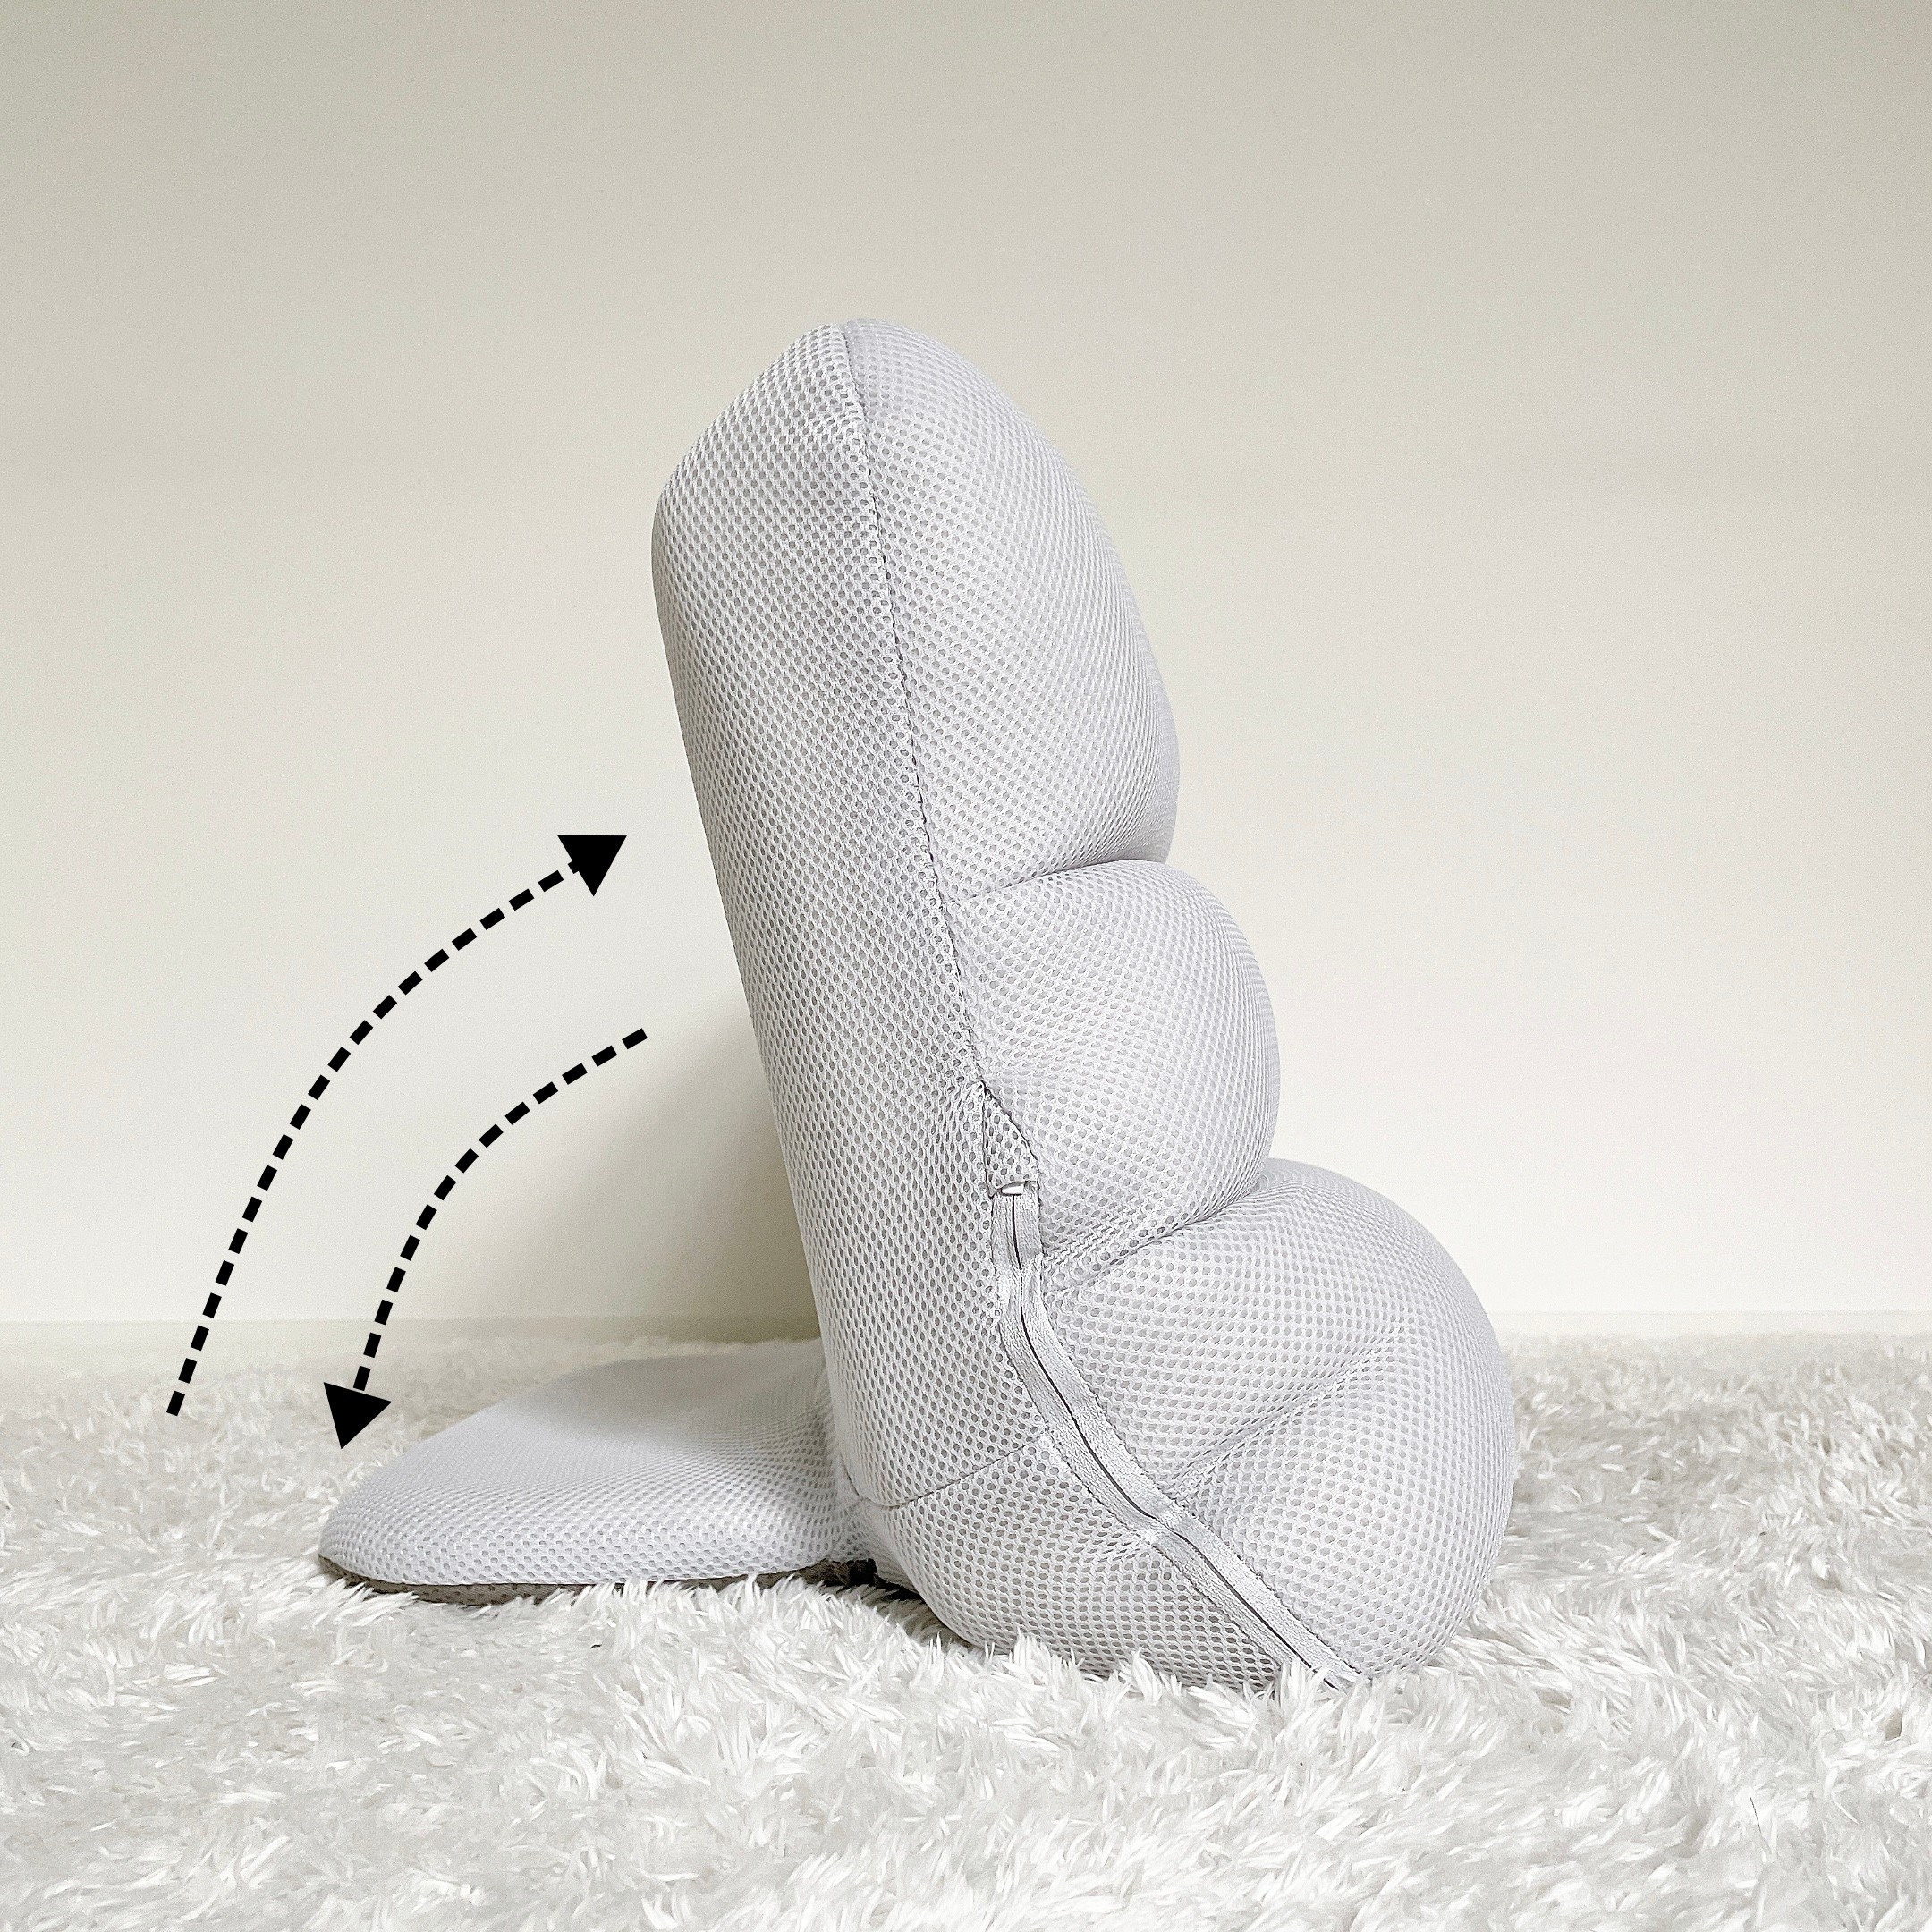 CAINZ（カインズ）のおすすめの便利グッズ「枕にもなる背もたれイス Lepoco クールグレー」